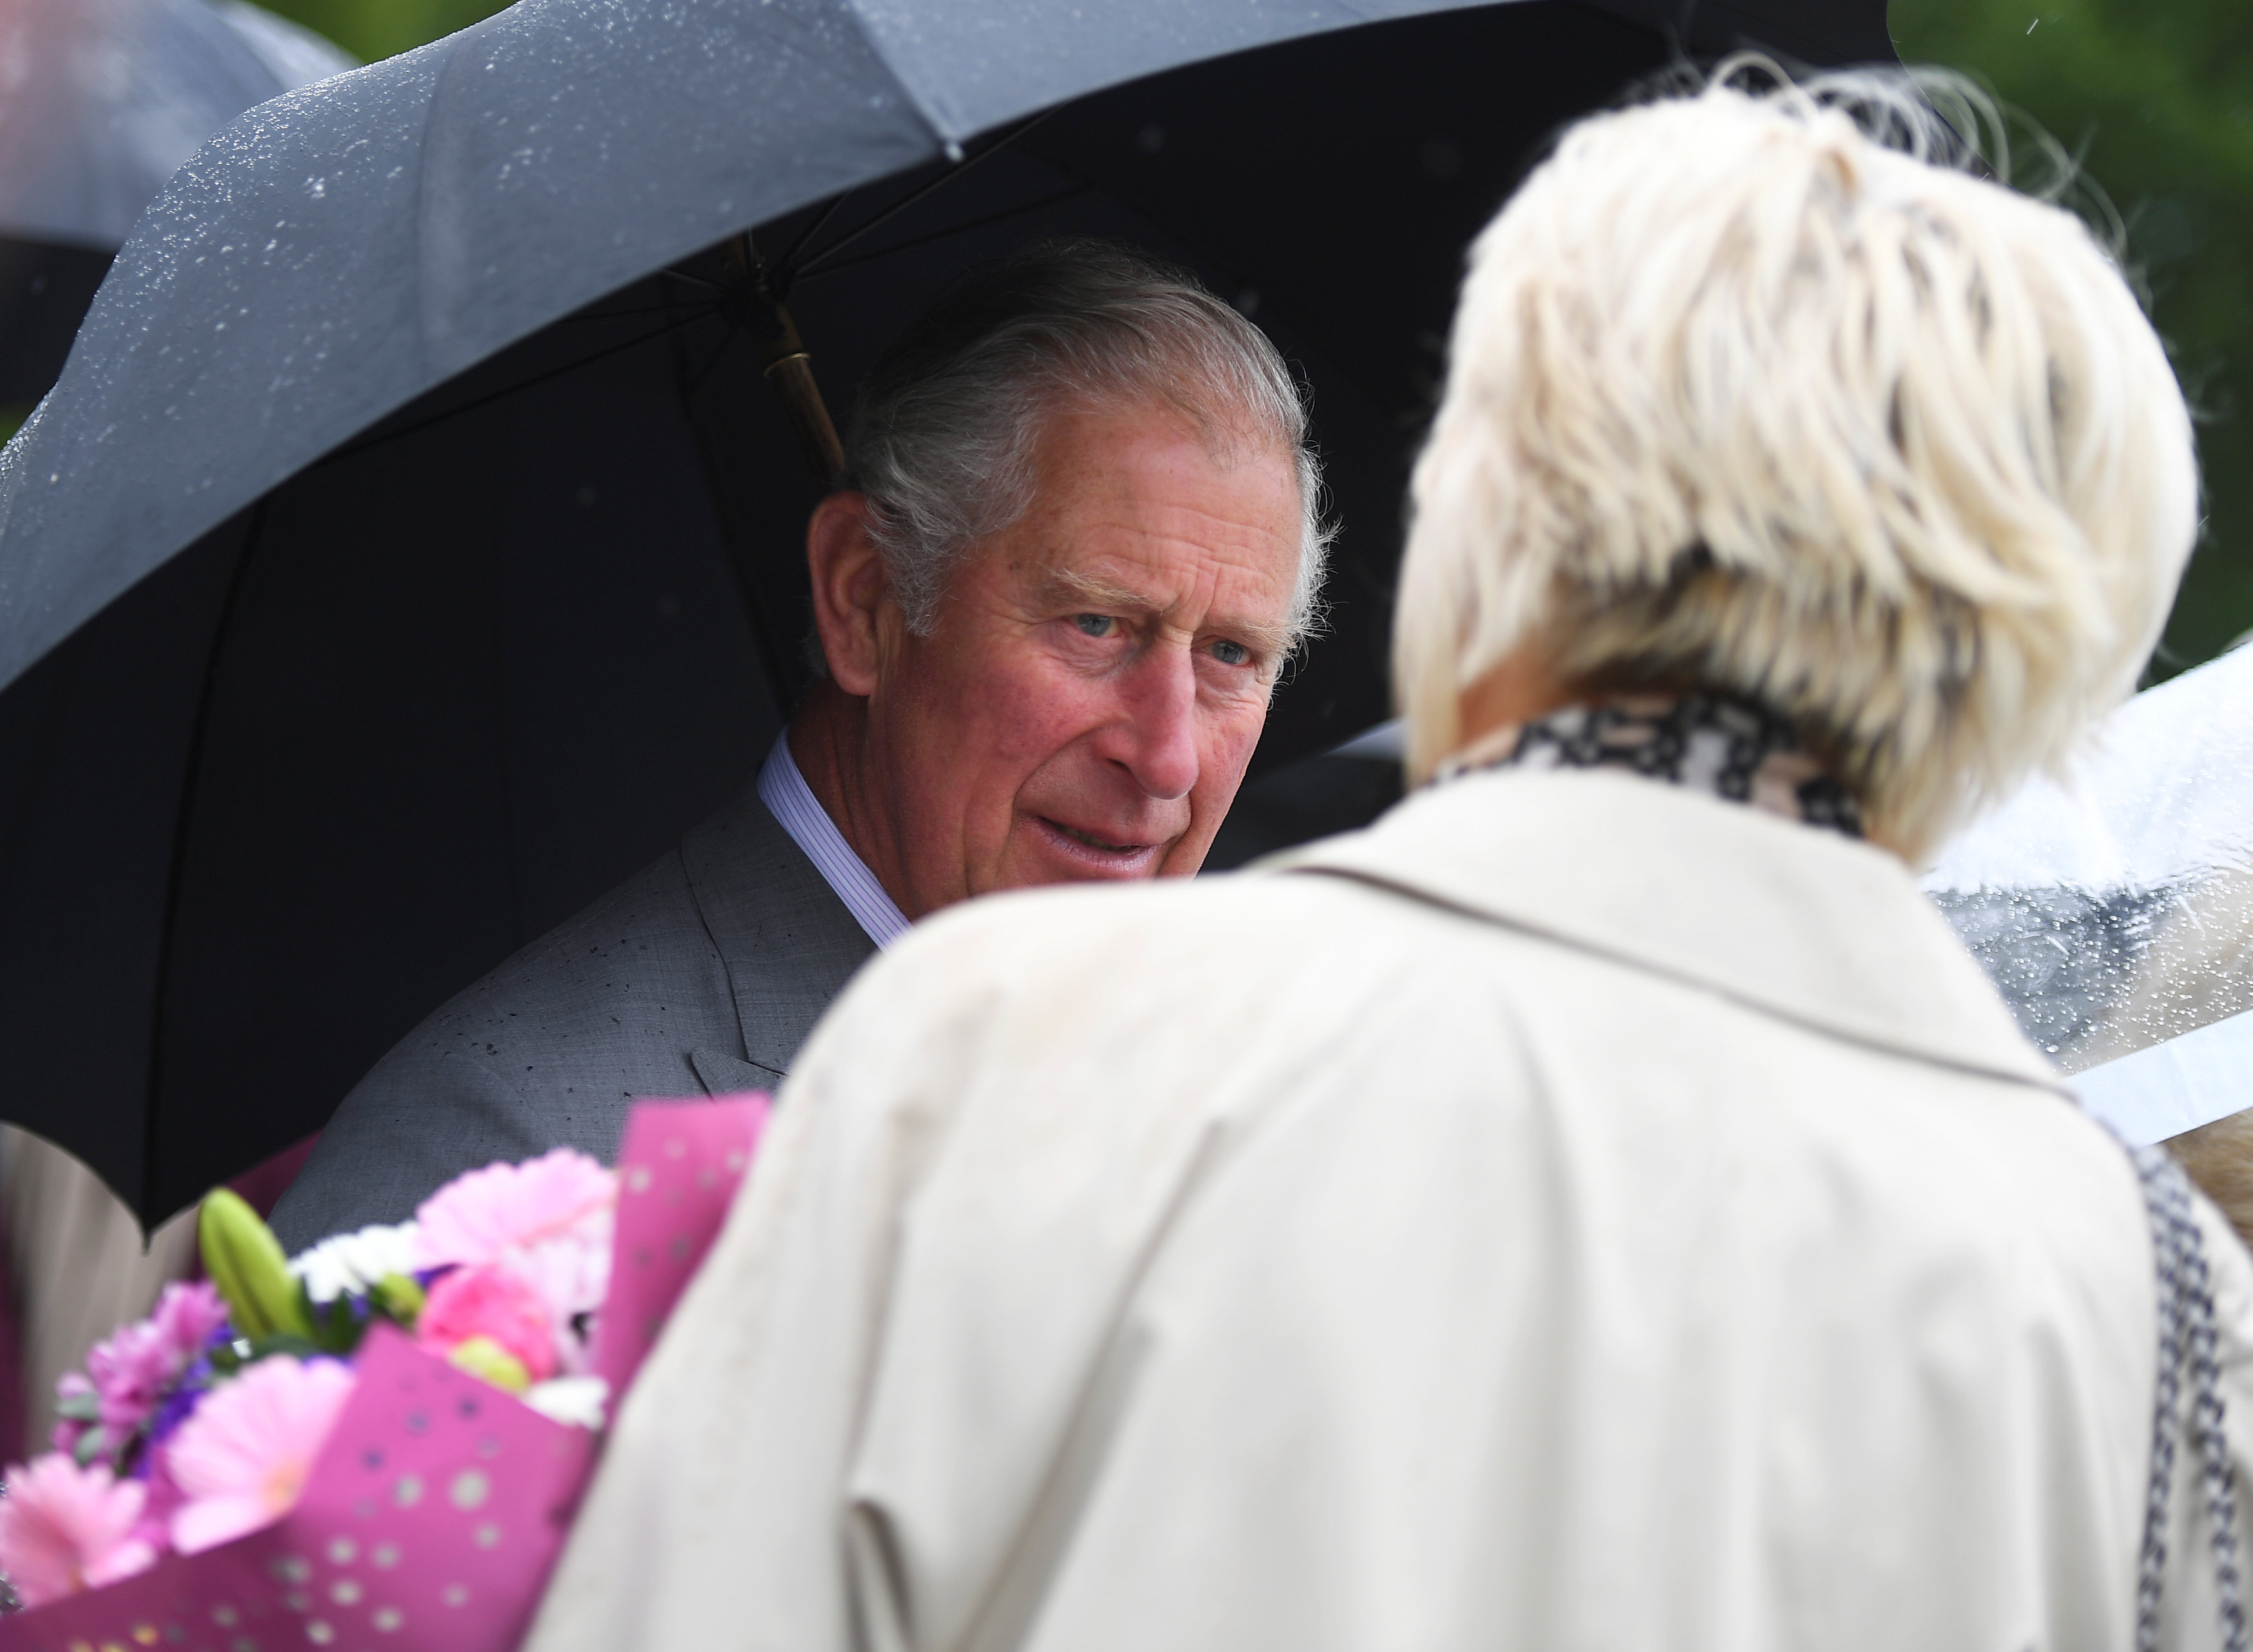 El príncipe Carlos niega haber influido en investigación sobre obispo pederasta